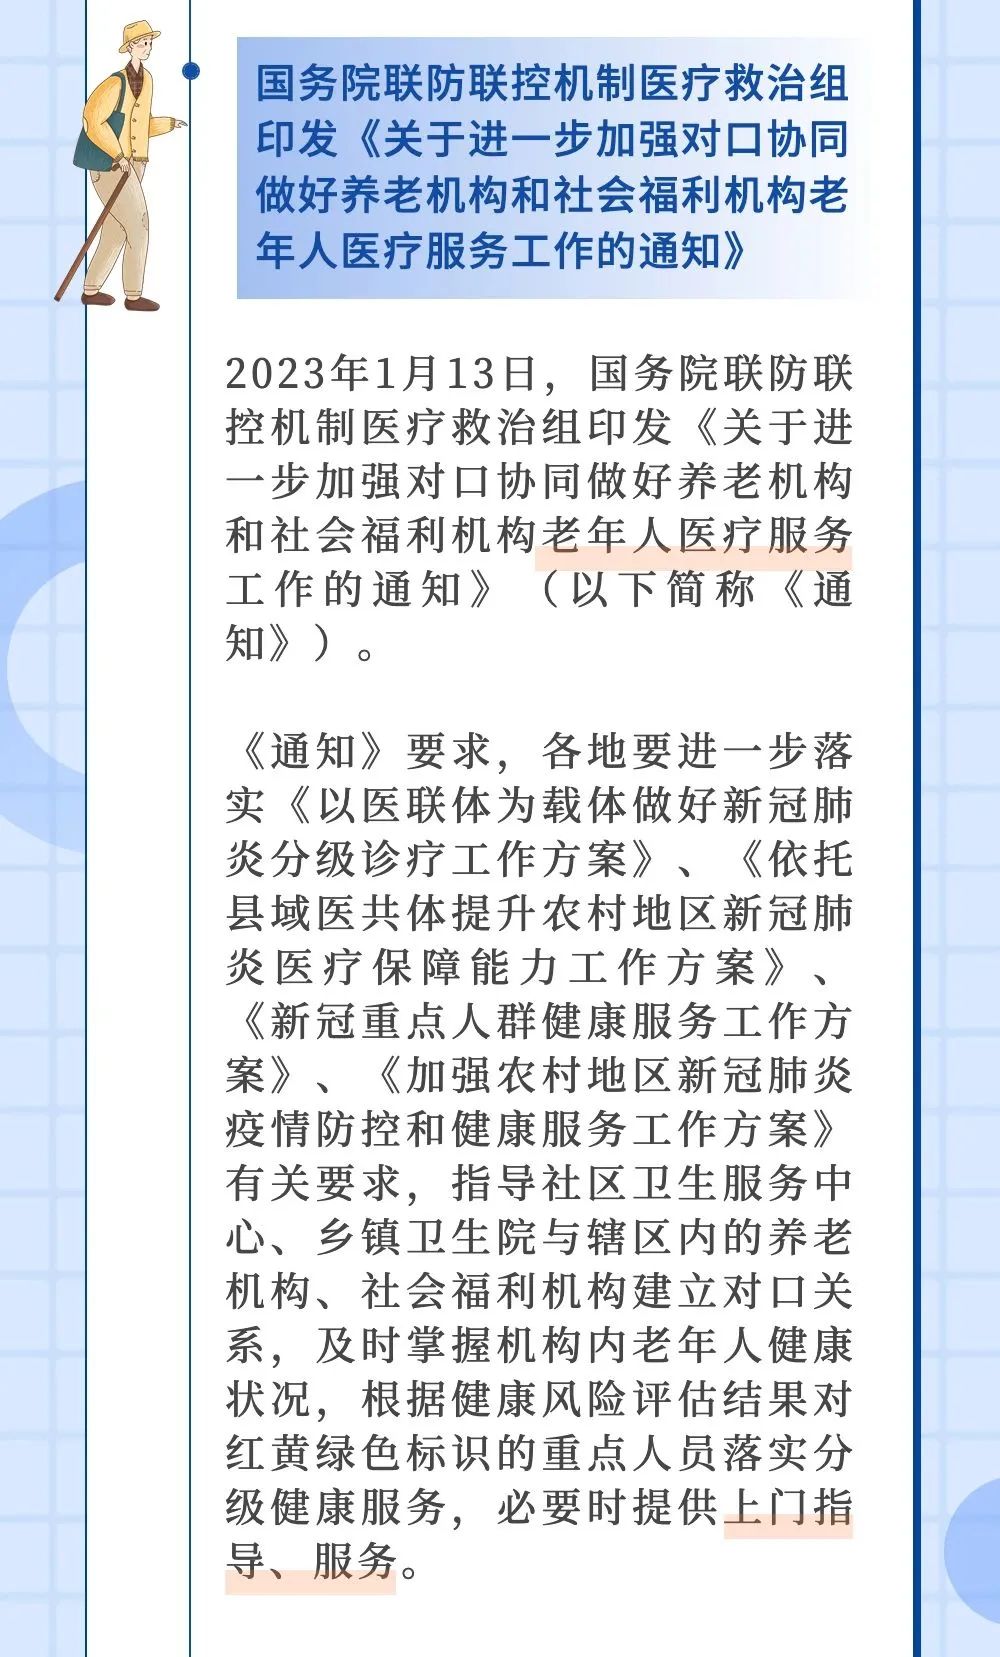 北京：增办“护理院”、免费体检……1月、2月老龄政策盘点→